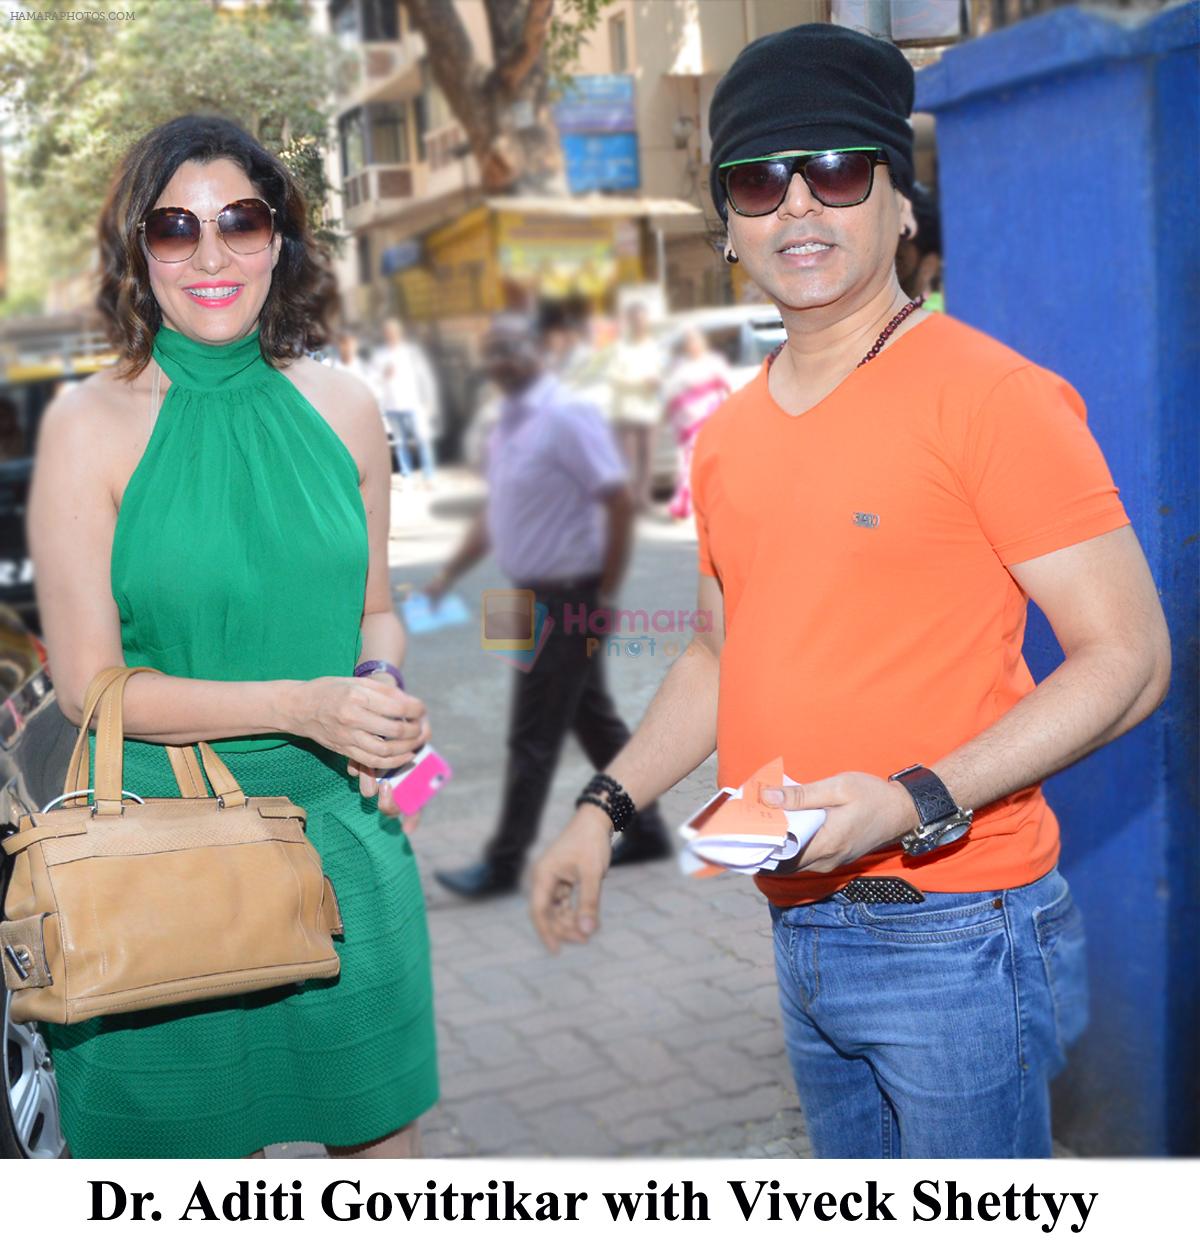 Aditi Govitrikar with Viveck Shettyy on FM Rainbow 107.1